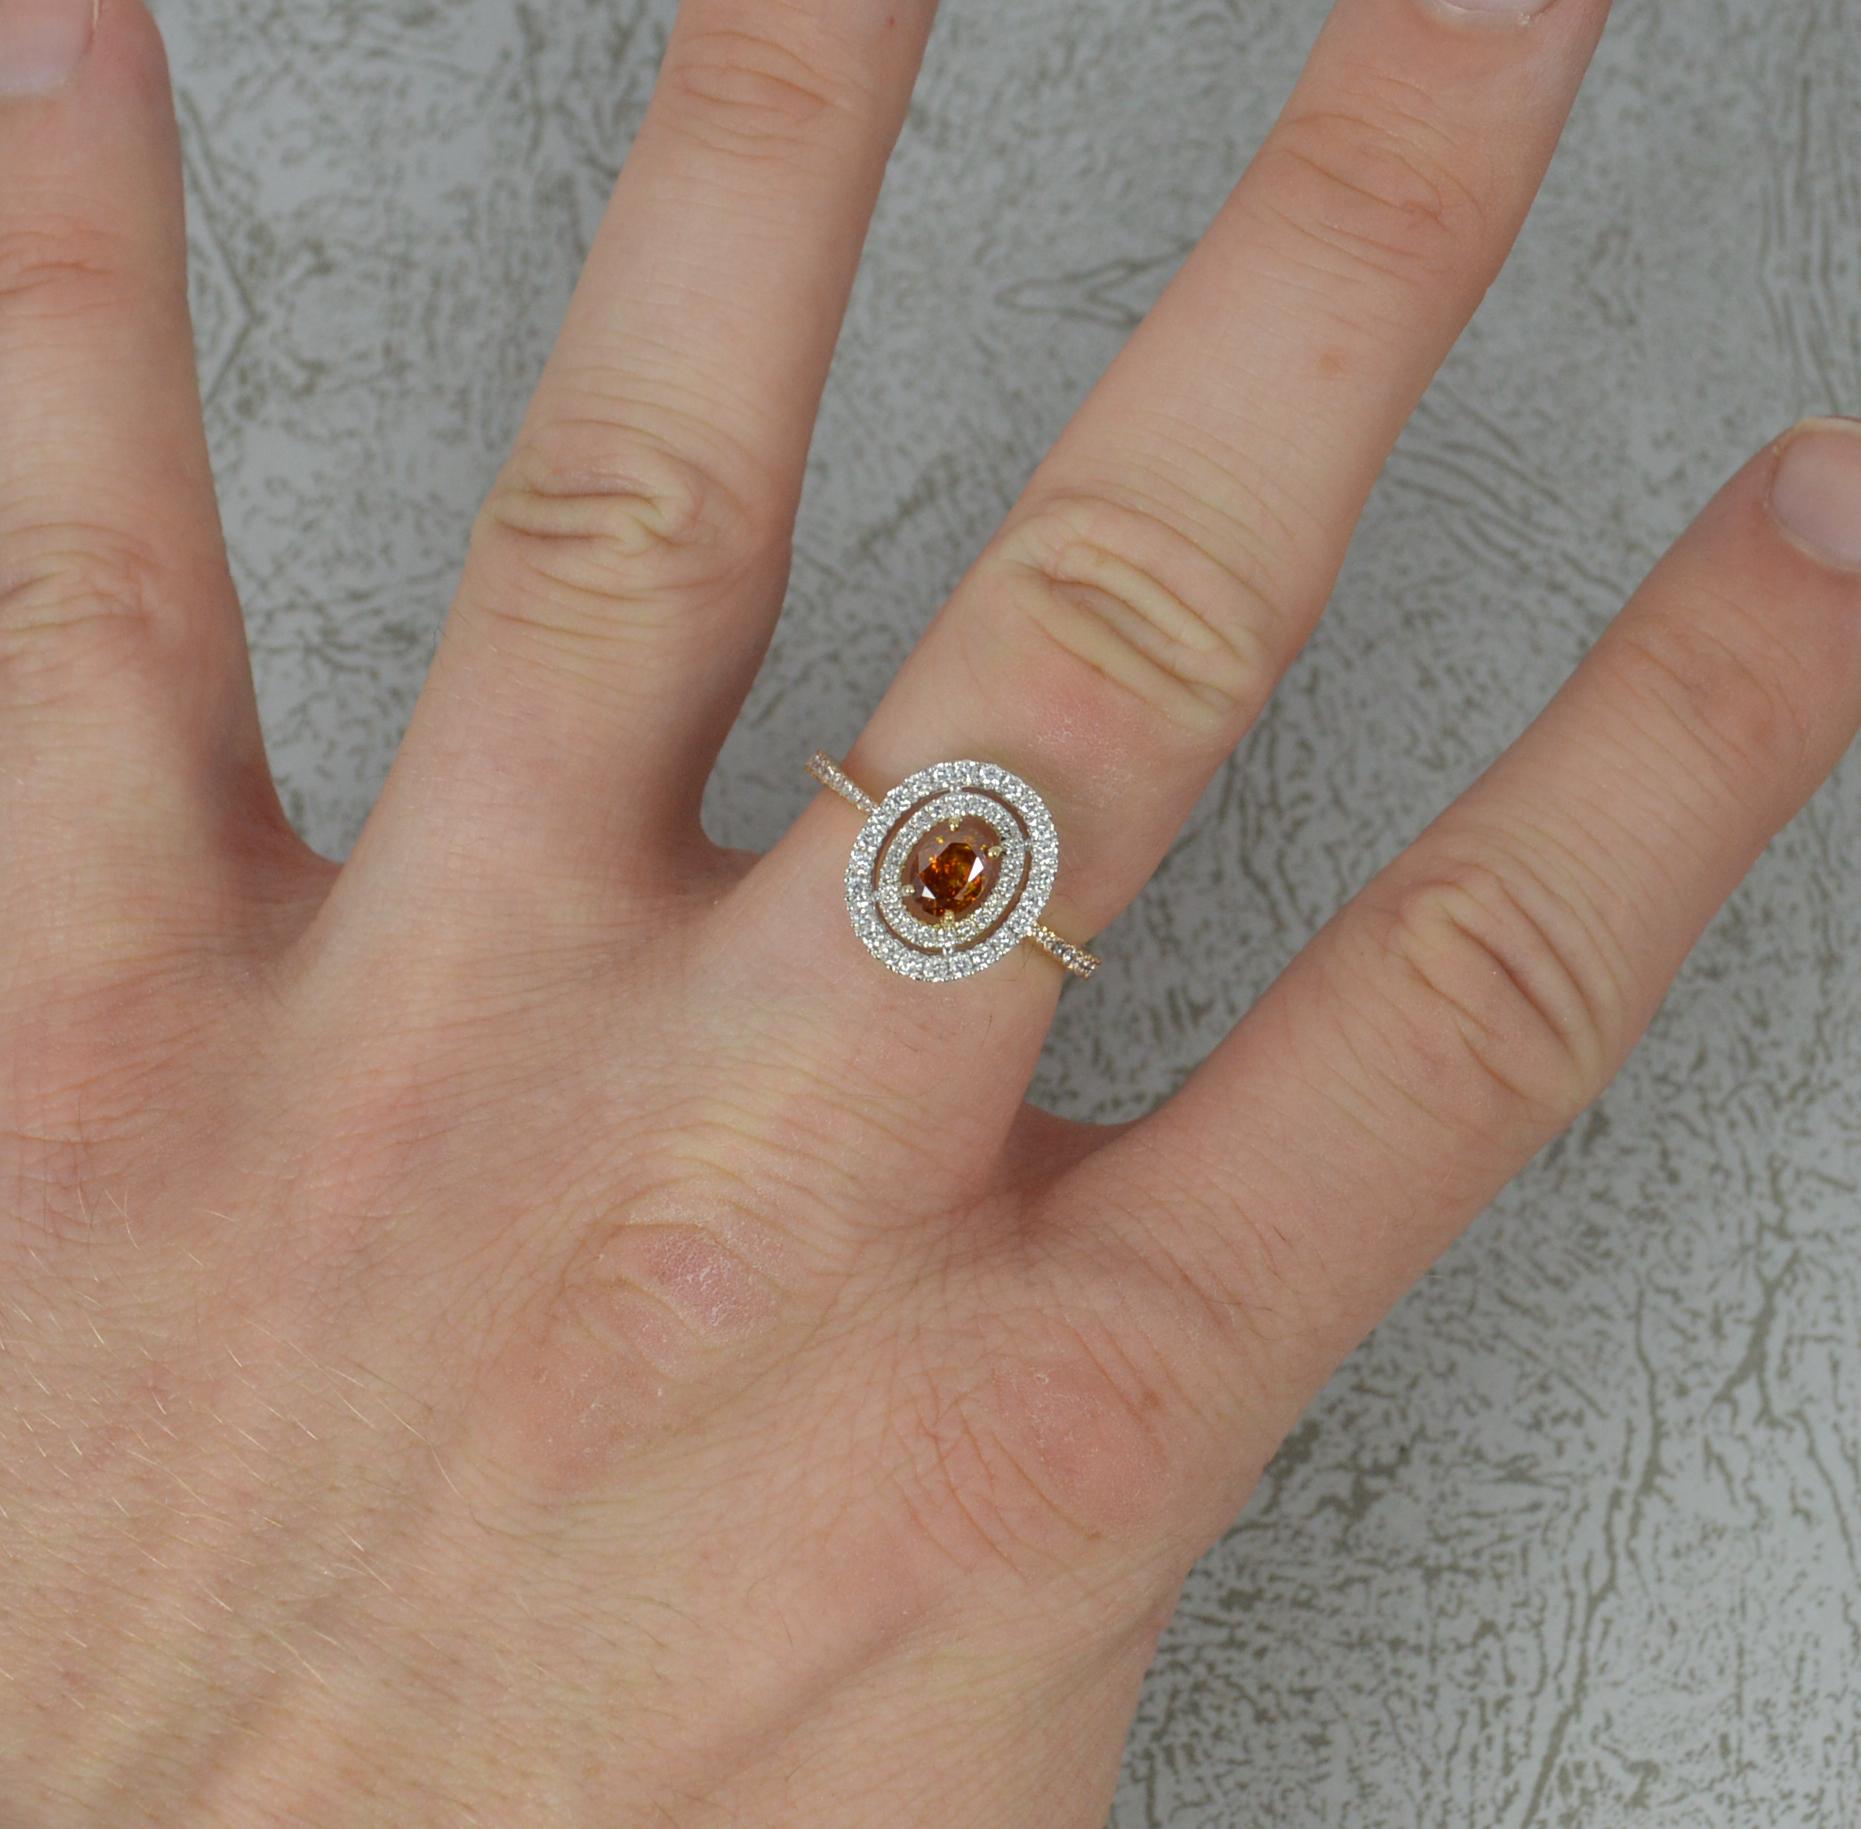 Eine atemberaubende Damen Doppel Halo Engagement Art Ring.
Gefertigt aus 18 Karat Roségold mit einem Kopf aus Weißgold.
Mit einem oval geschliffenen Diamanten in der Mitte, 4,2 mm x 5,3 mm, 0,48 Karat, offensichtlich und natürliche orange Farbe.